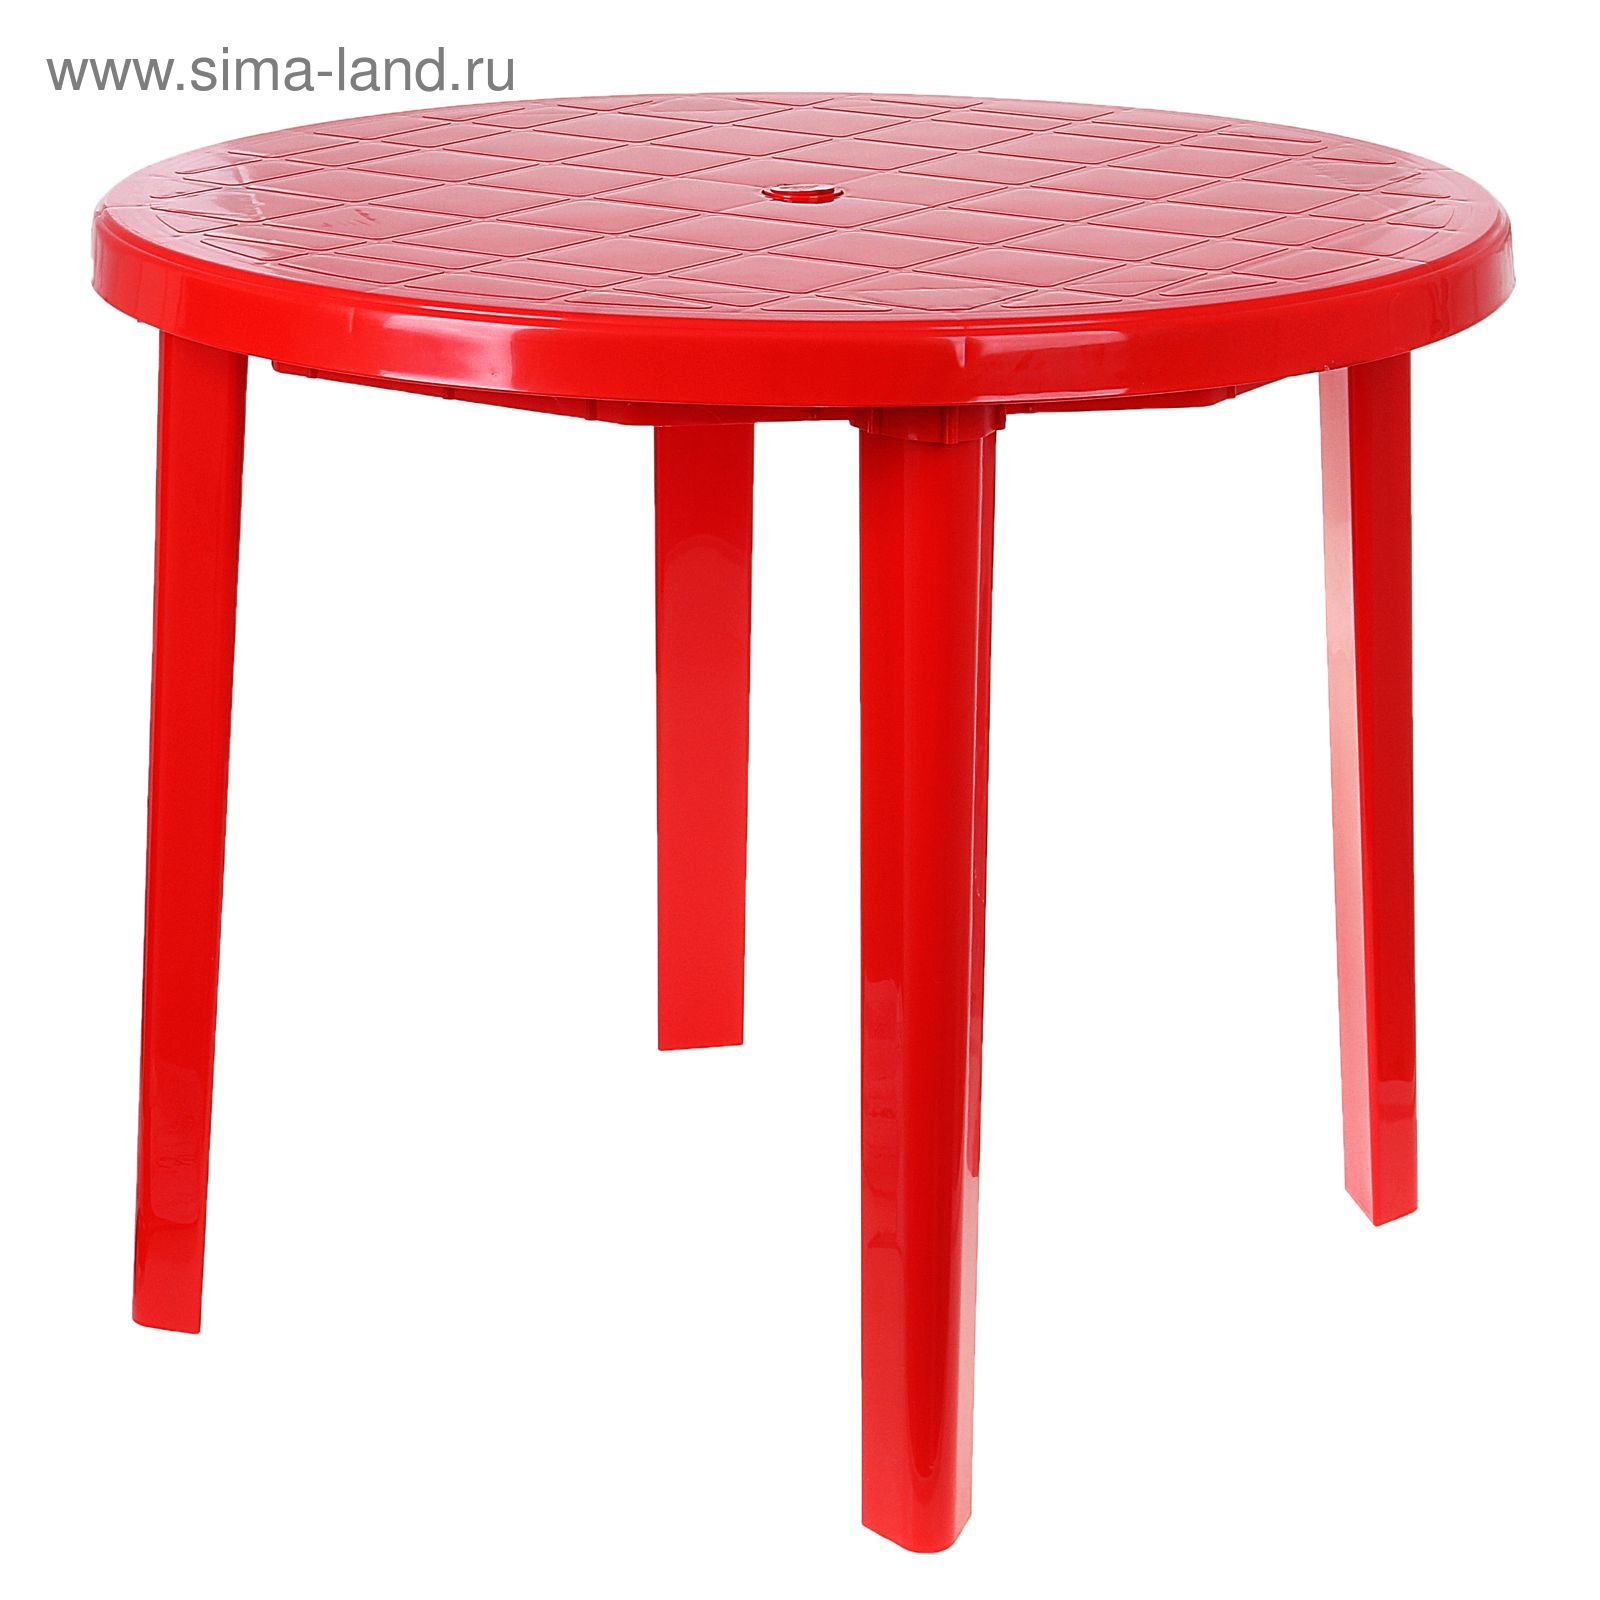 Стол круглый, размер 90 х 90 х 75 см, цвет красный